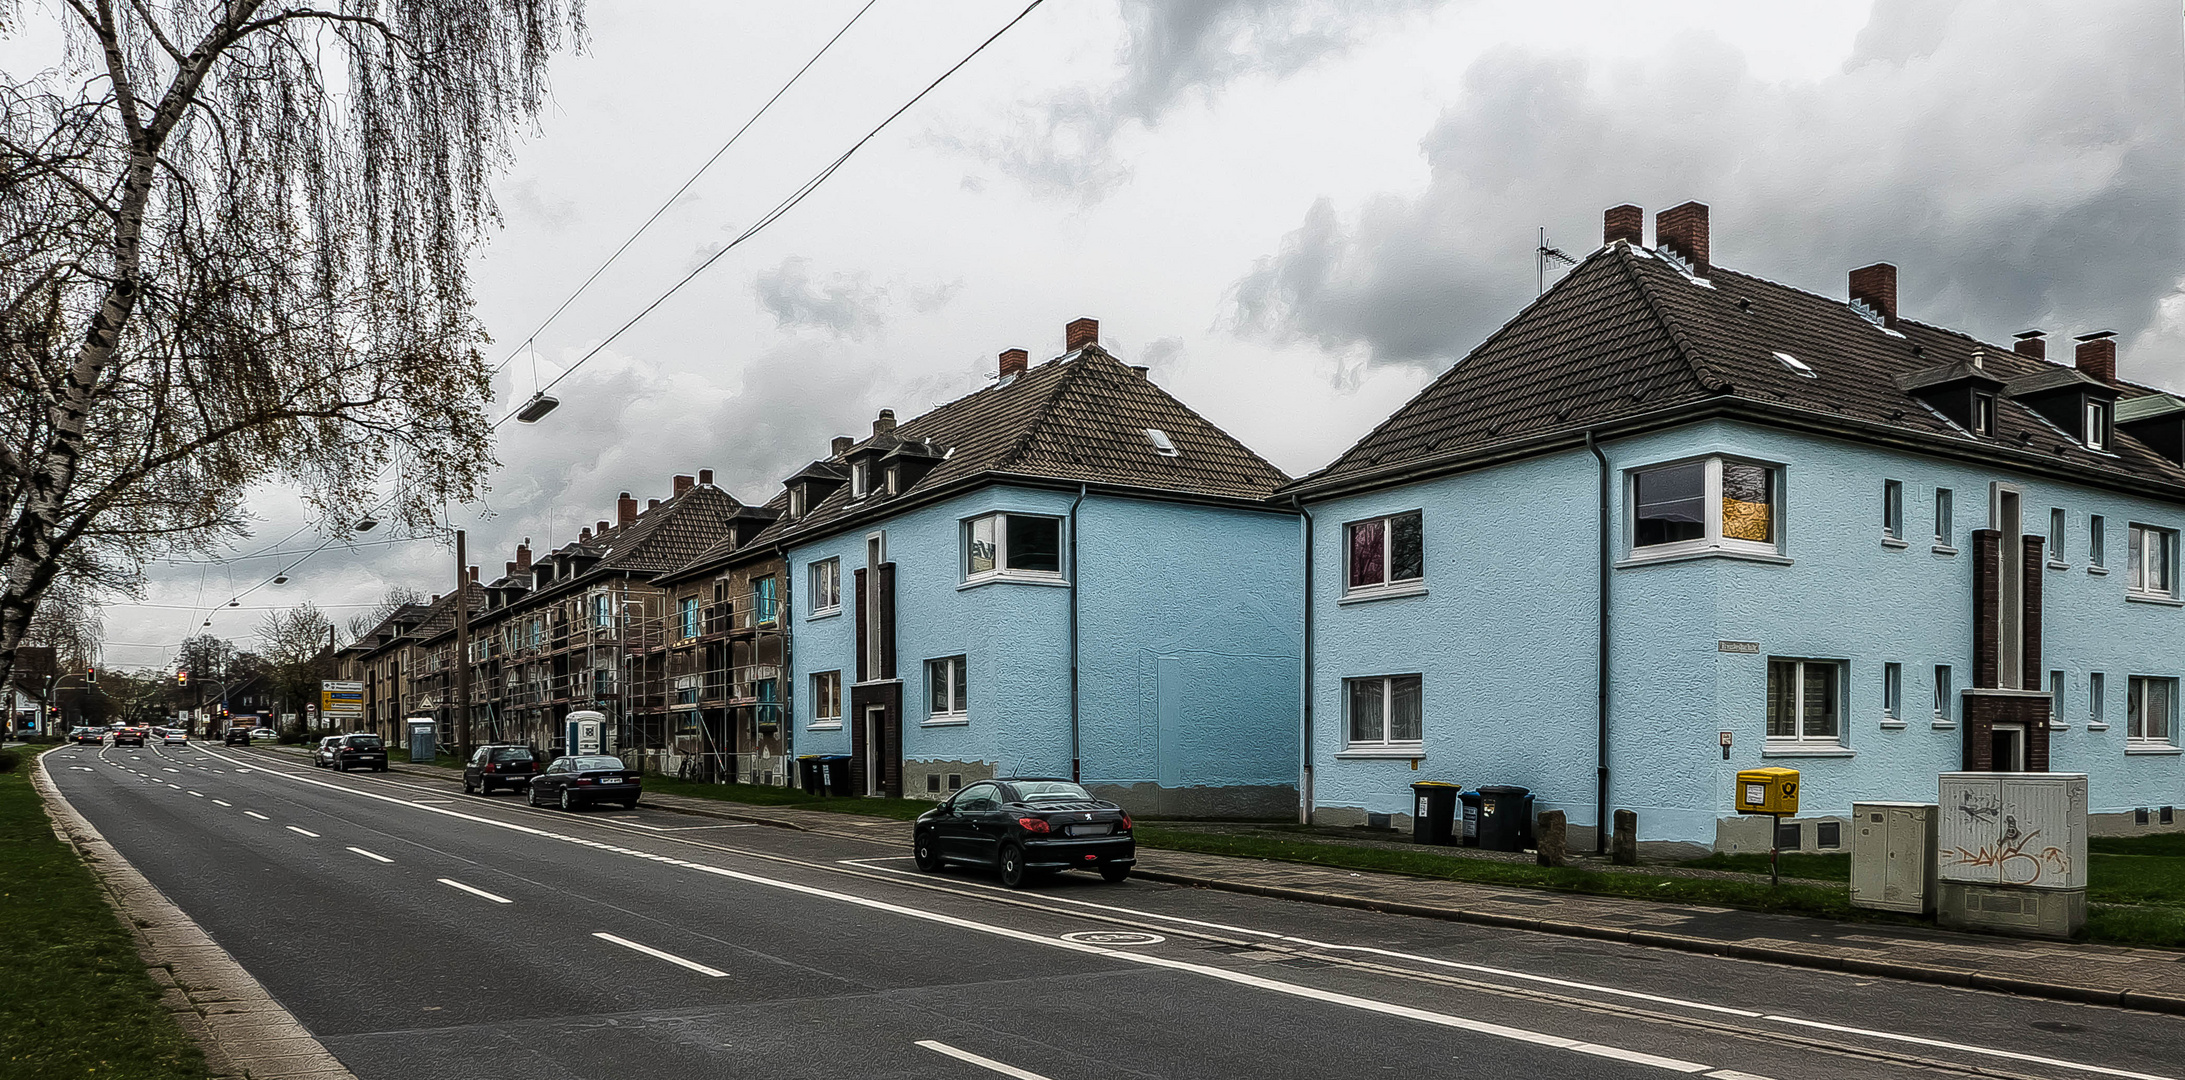 In den Straßen von Recklinghausen (31)